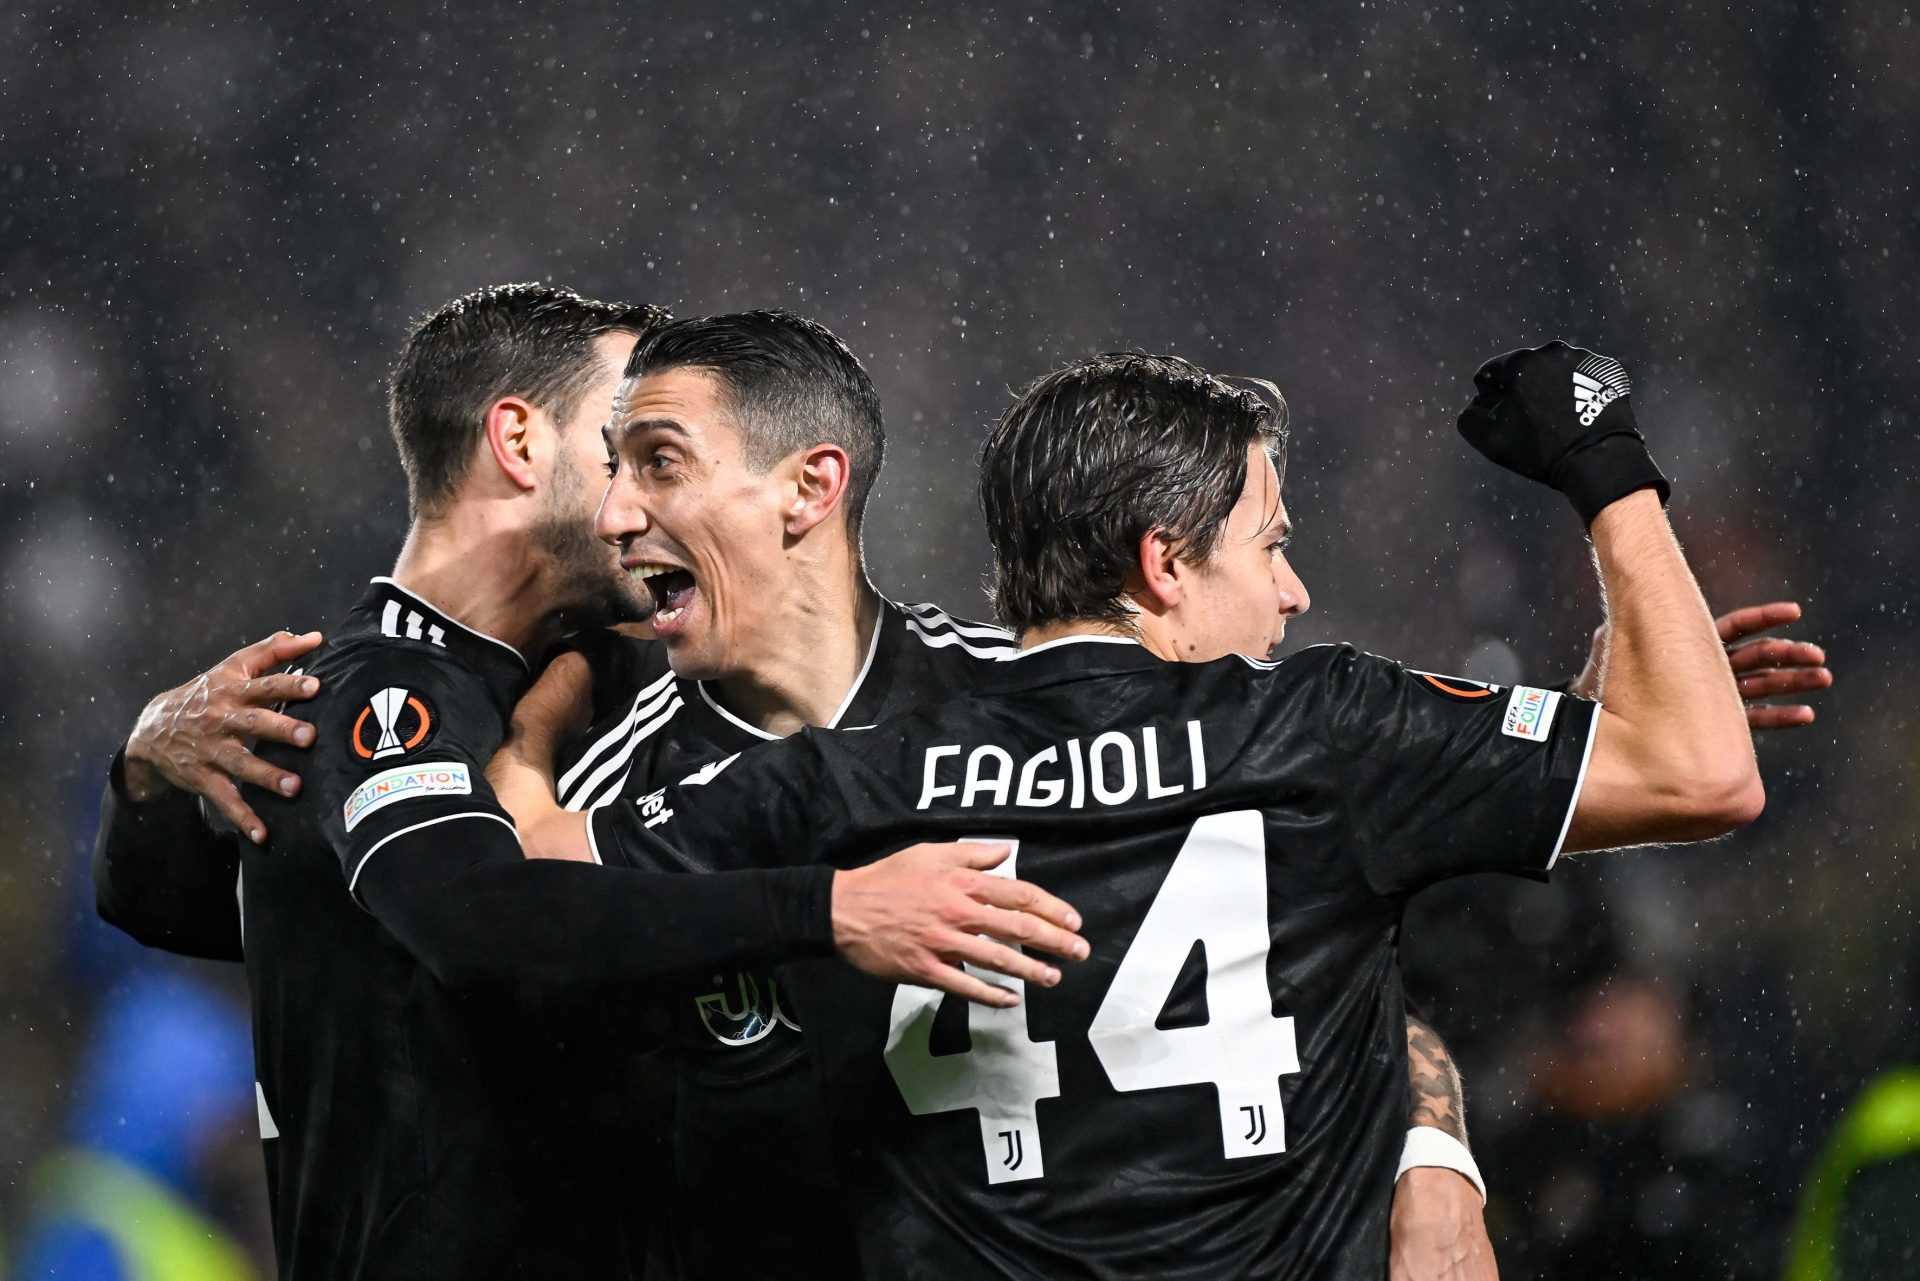 Le pagelle di Nantes-Juventus (0-3): nel segno del Fideo!